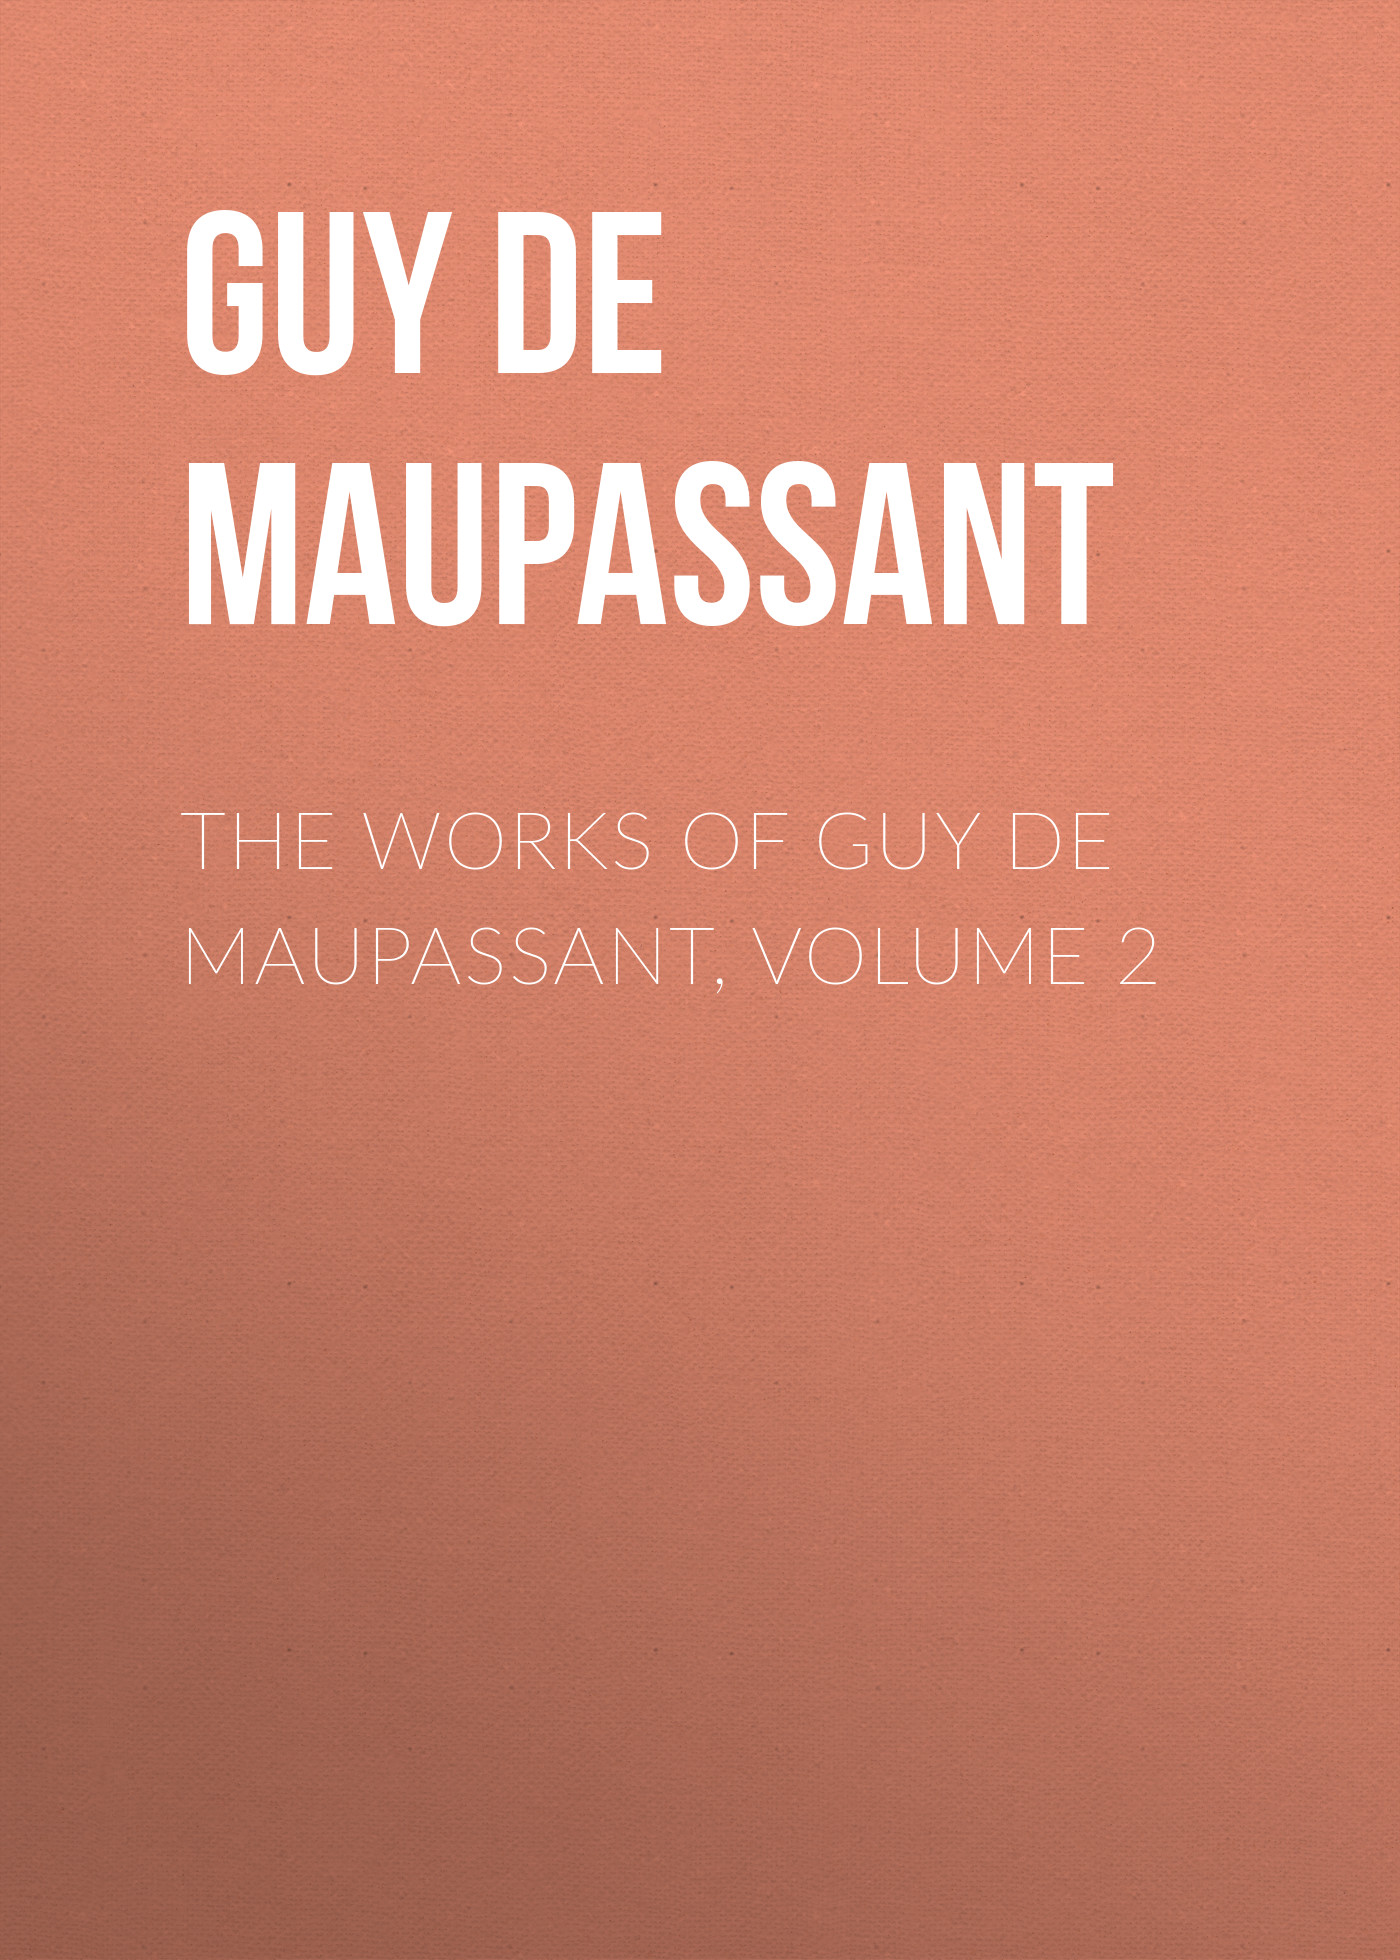 Книга The Works of Guy de Maupassant, Volume 2 из серии , созданная Guy Maupassant, может относится к жанру Литература 19 века, Зарубежная старинная литература, Зарубежная классика. Стоимость электронной книги The Works of Guy de Maupassant, Volume 2 с идентификатором 25292251 составляет 0 руб.